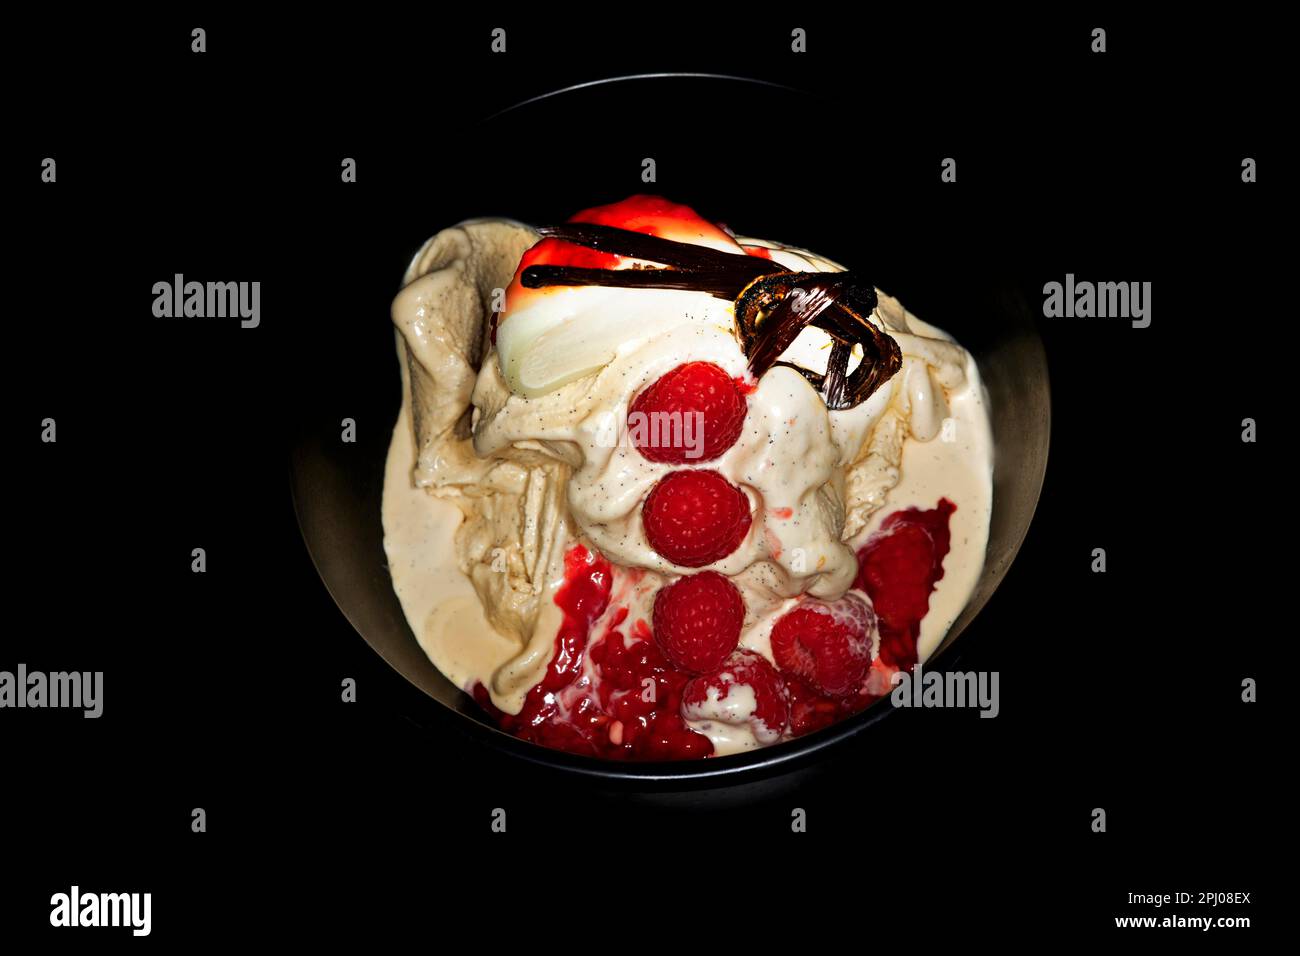 Gelato alla vaniglia con vaniglia fresca di Mauritius, lamponi, baccello di  vaniglia annodato e un gelato giapponese mochi dimezzato, fotografia  alimentare con un Foto stock - Alamy